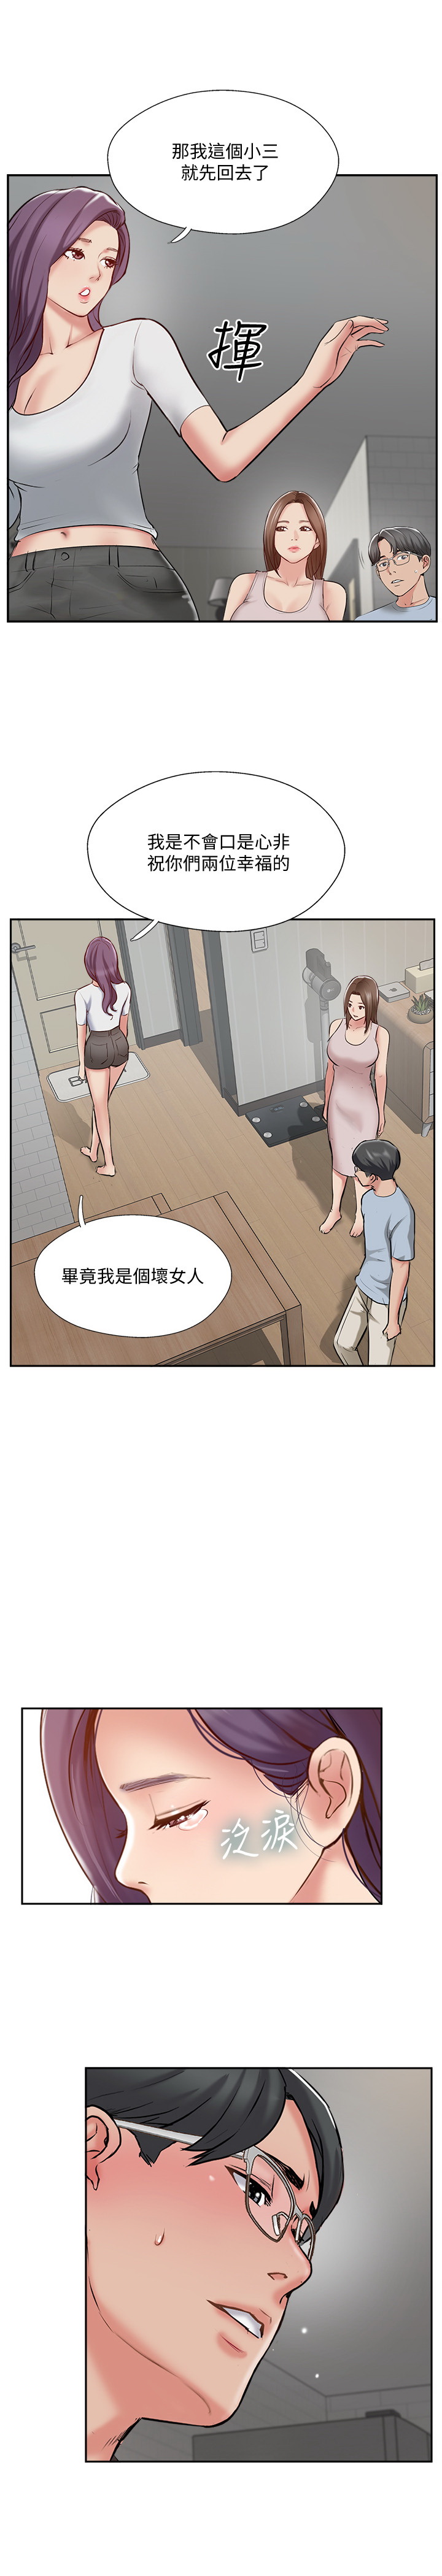 韩国污漫画 完美新伴侶 第48话 17